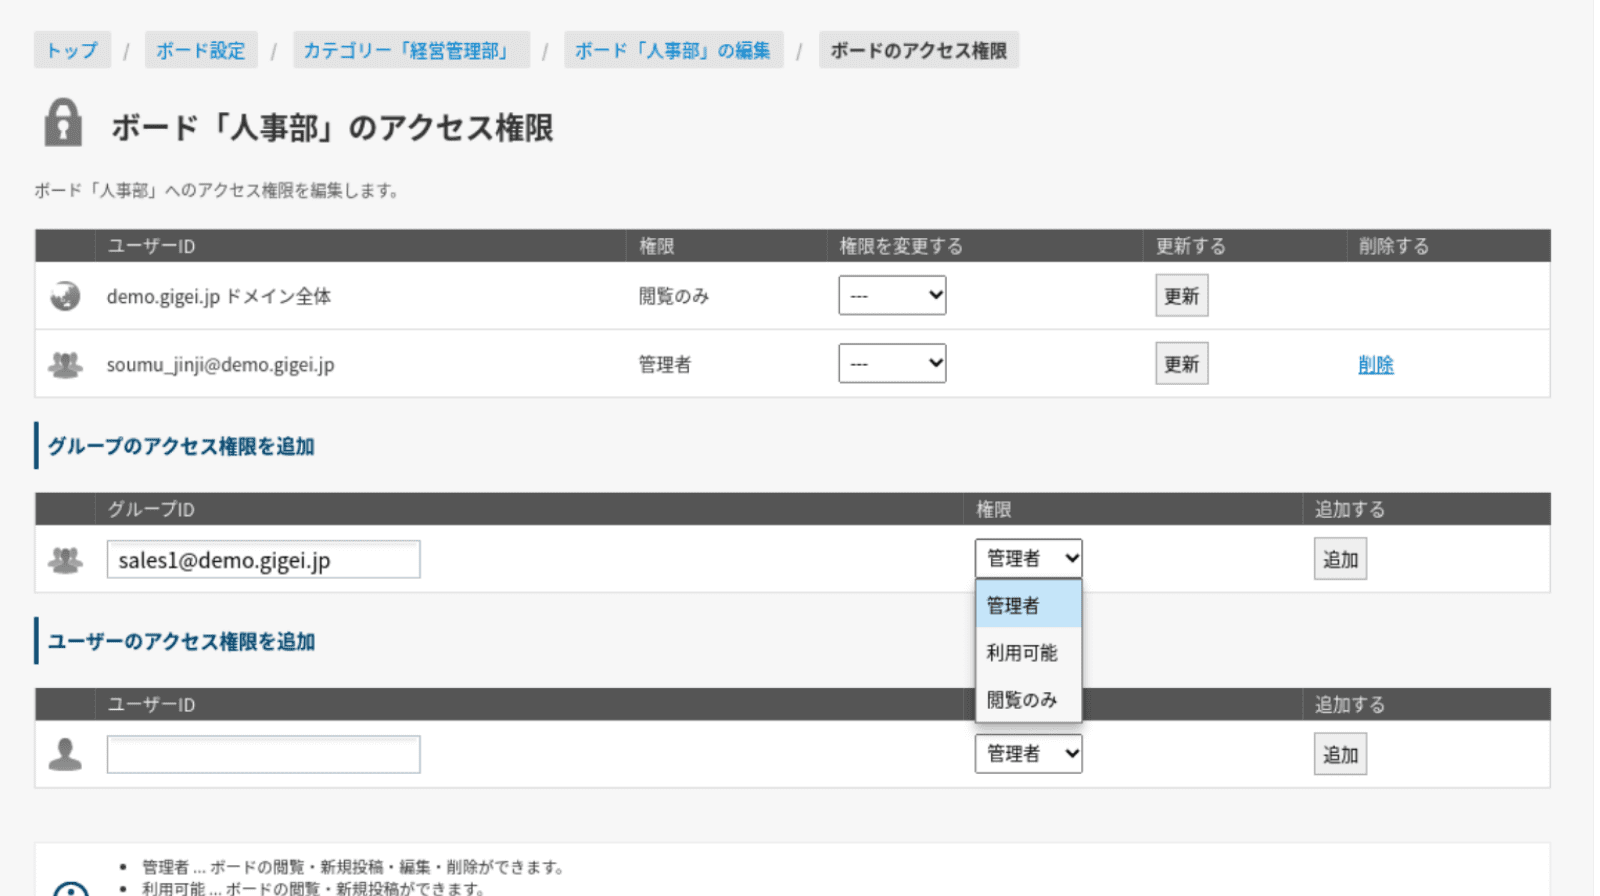 rakumo ボード アクセス権限設定画面